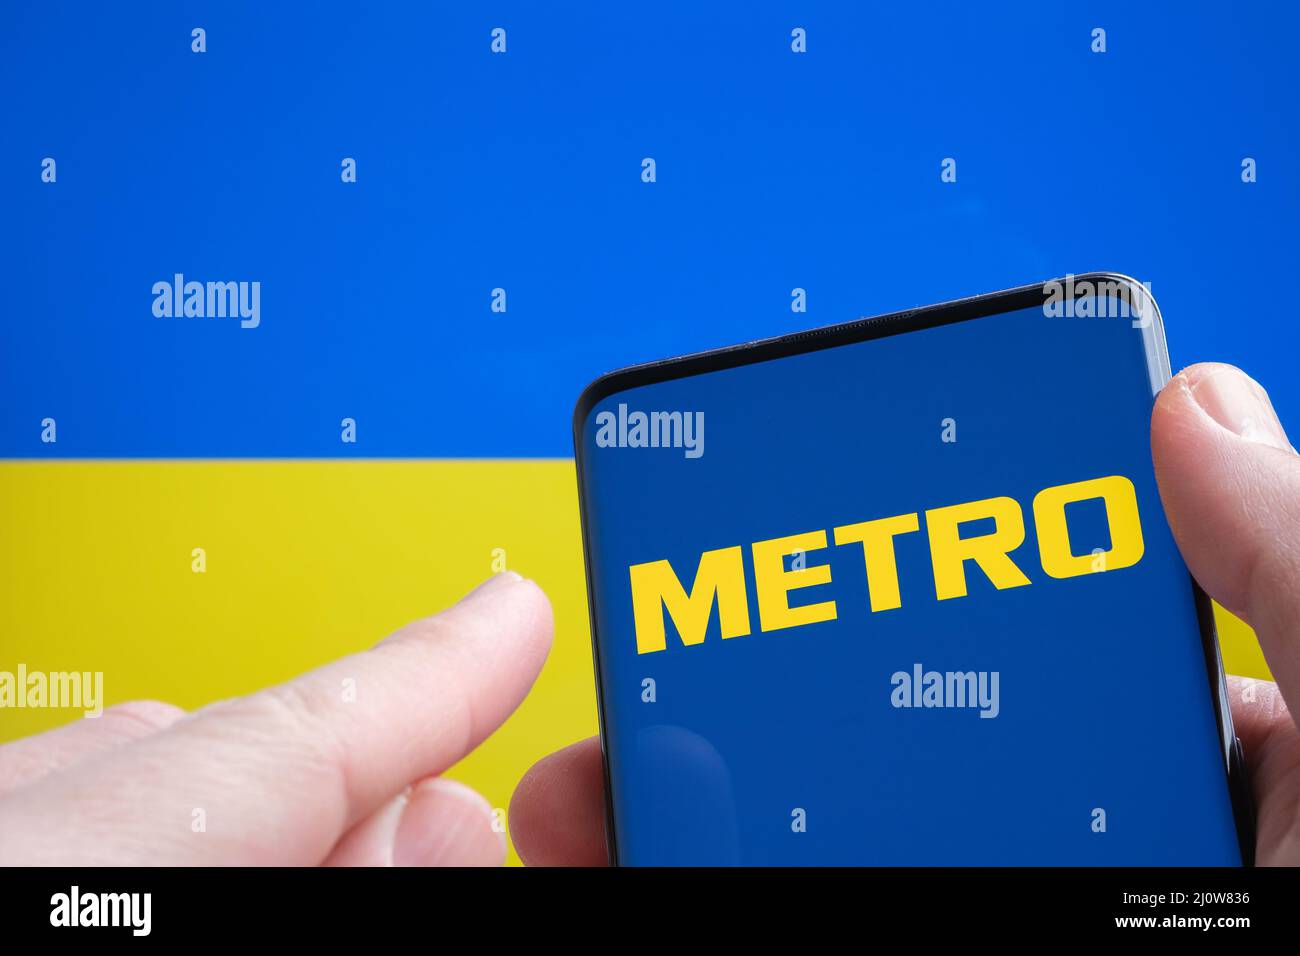 METRO Cash e Carry Company logo sullo smartphone e bandiera Ucraina sullo sfondo. Concetto. Stafford, Regno Unito, 20 marzo 2022 Foto Stock